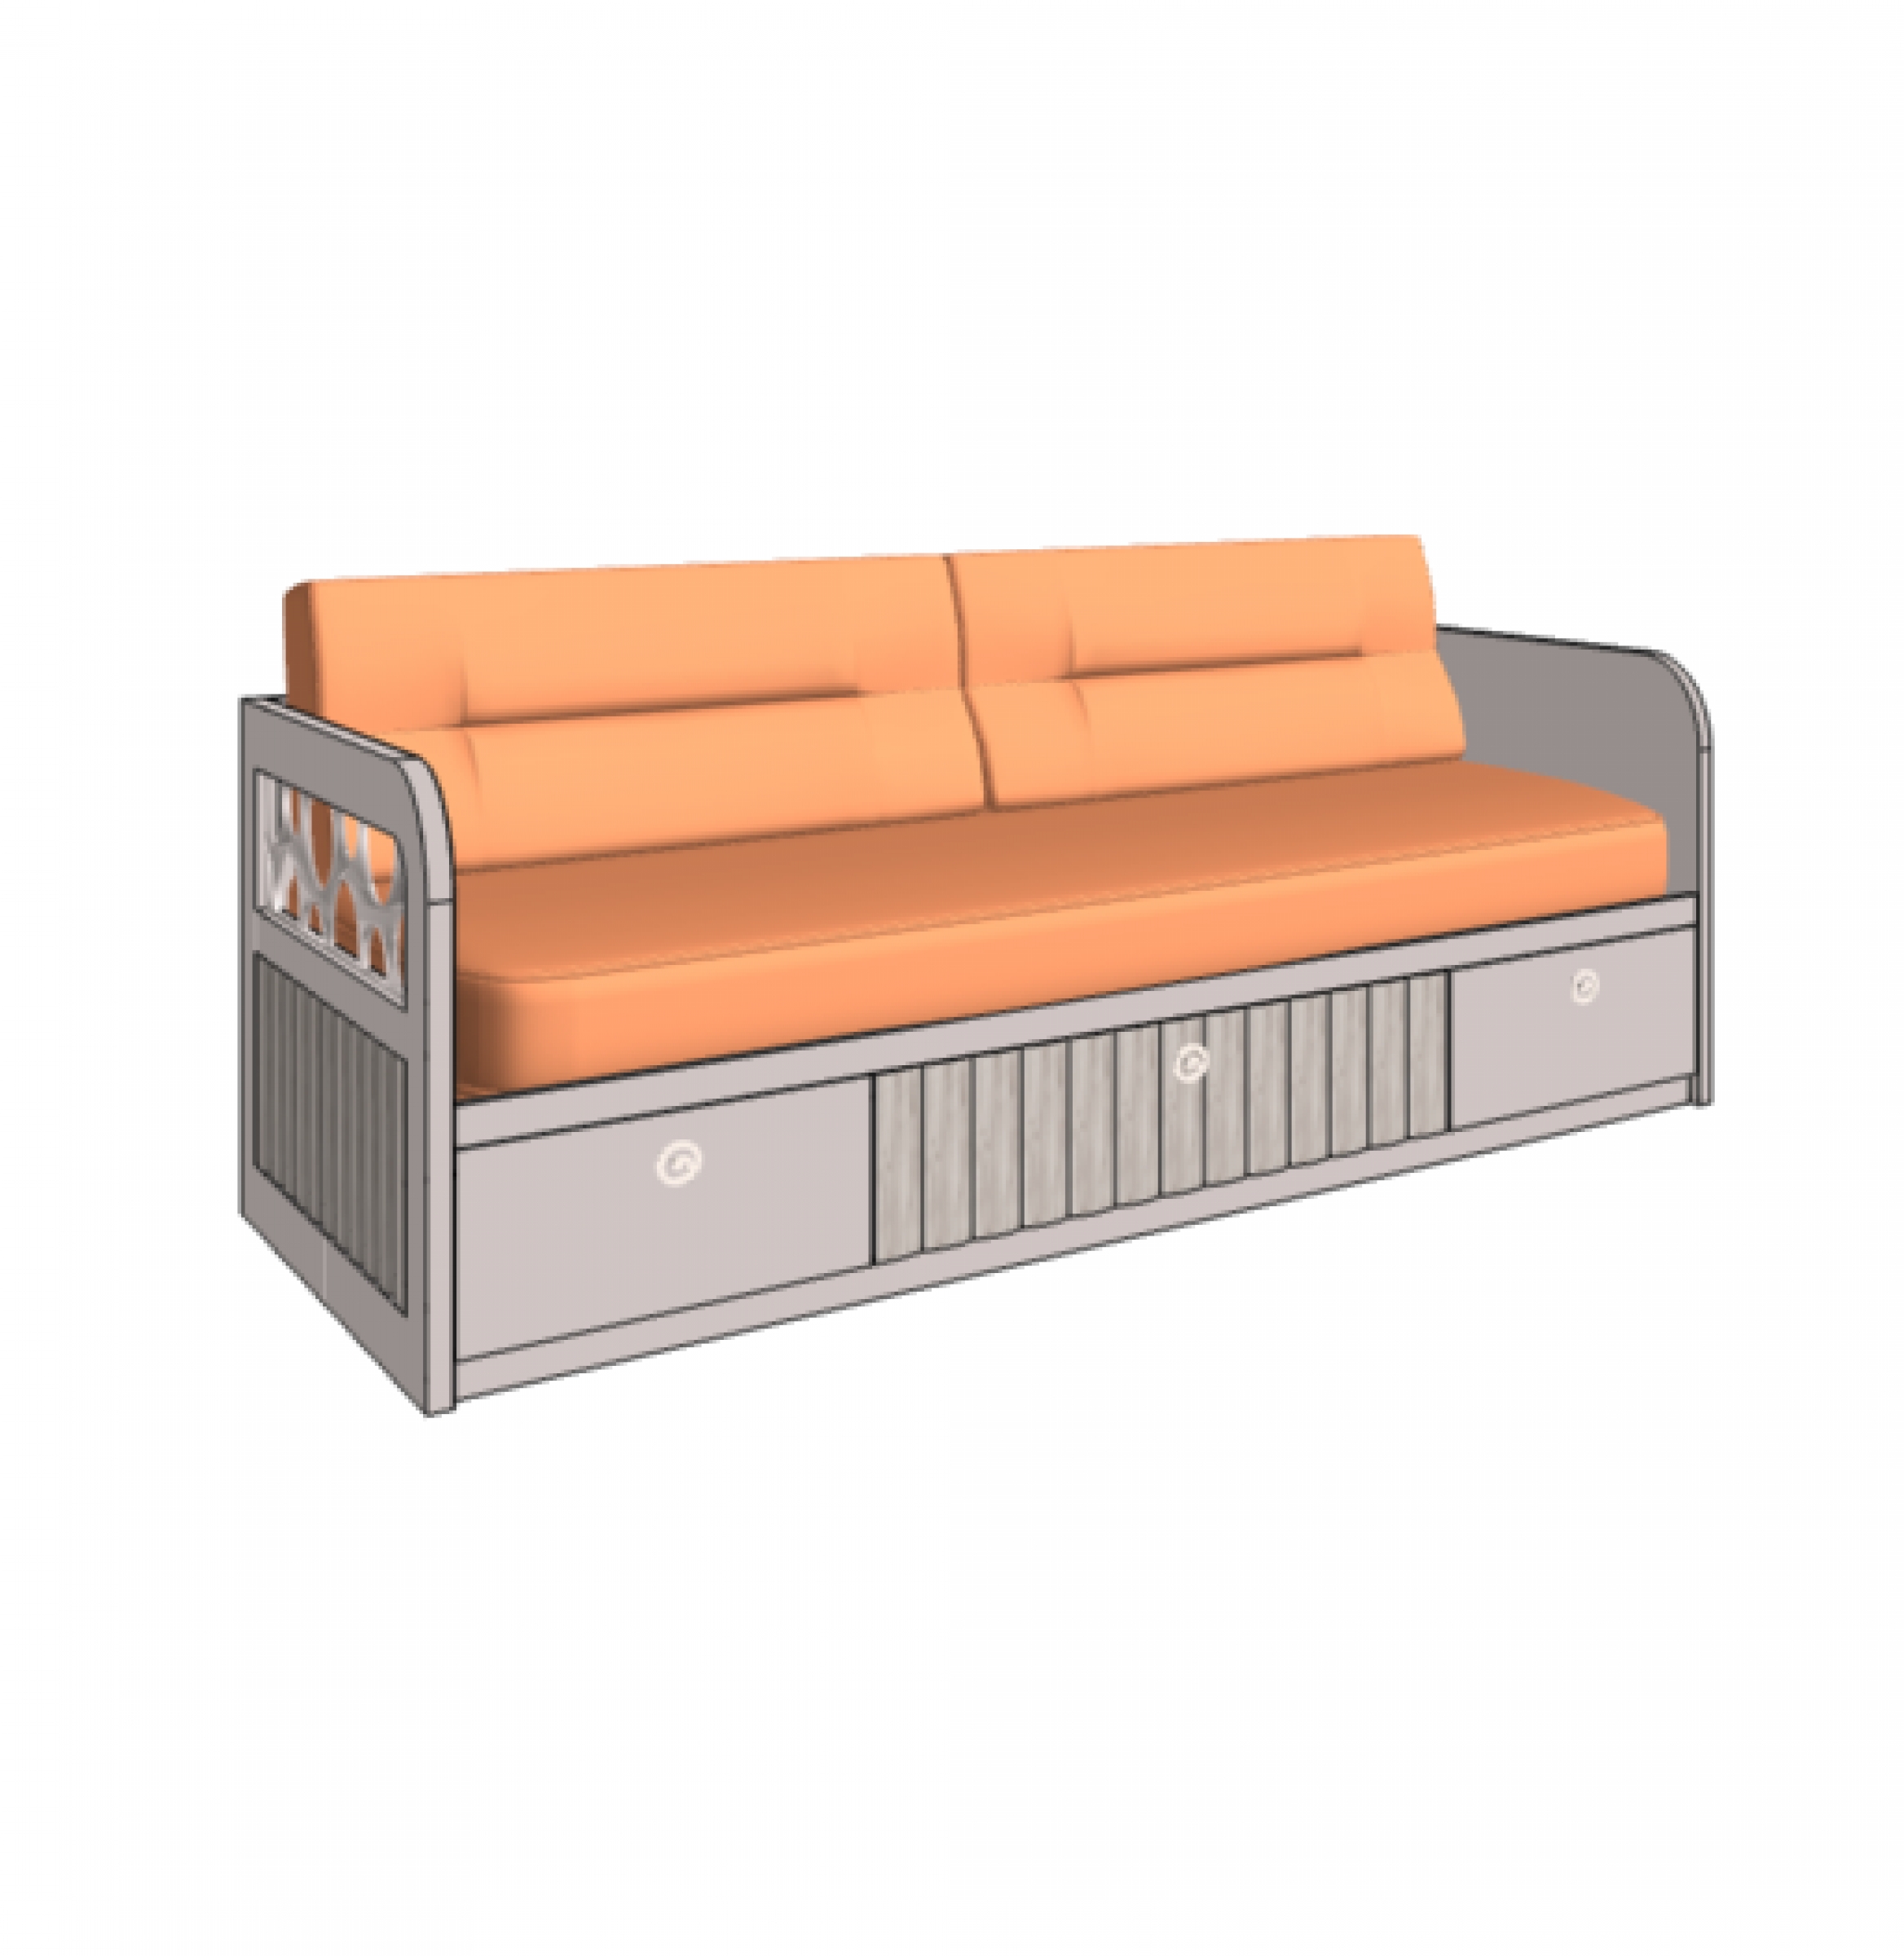 Klюkva кровать - диван VELVET с 3-мя ящиками, 1 техническая боковина. арт: VD2 L/RQ